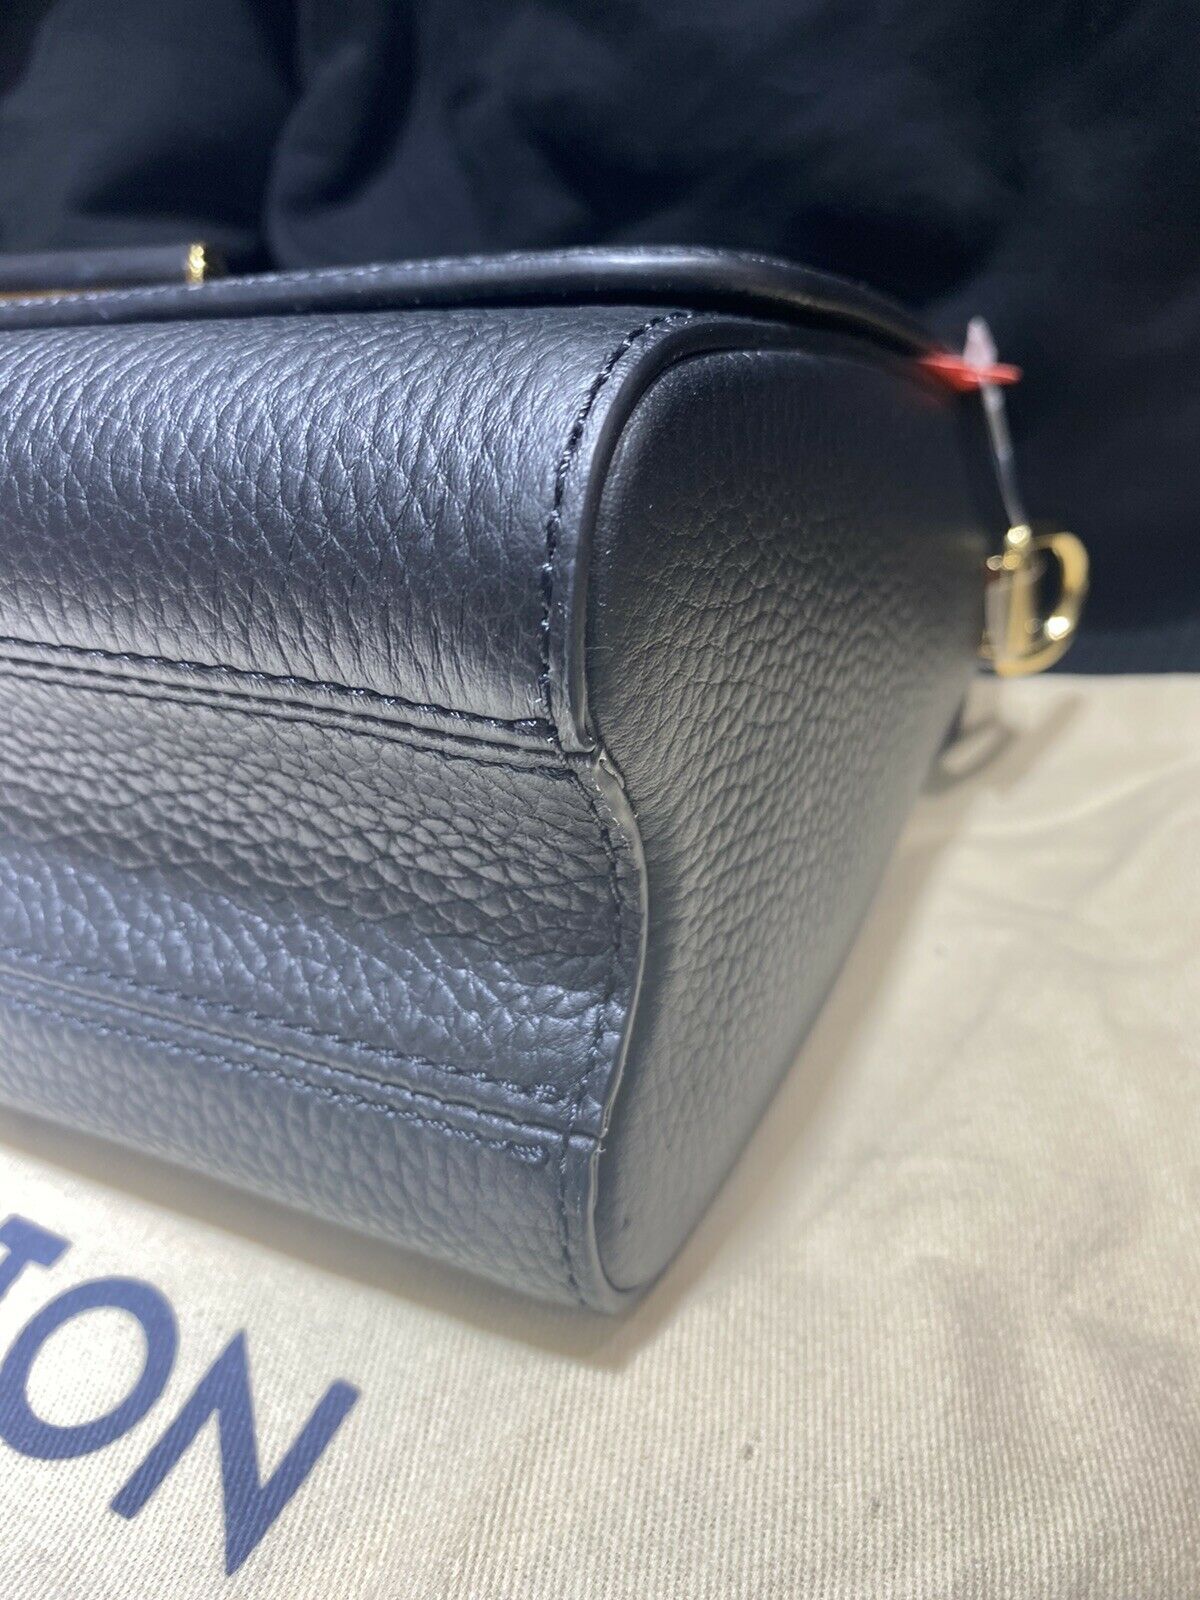 Louis Vuitton Twist Scrunchie Top Handle Bag